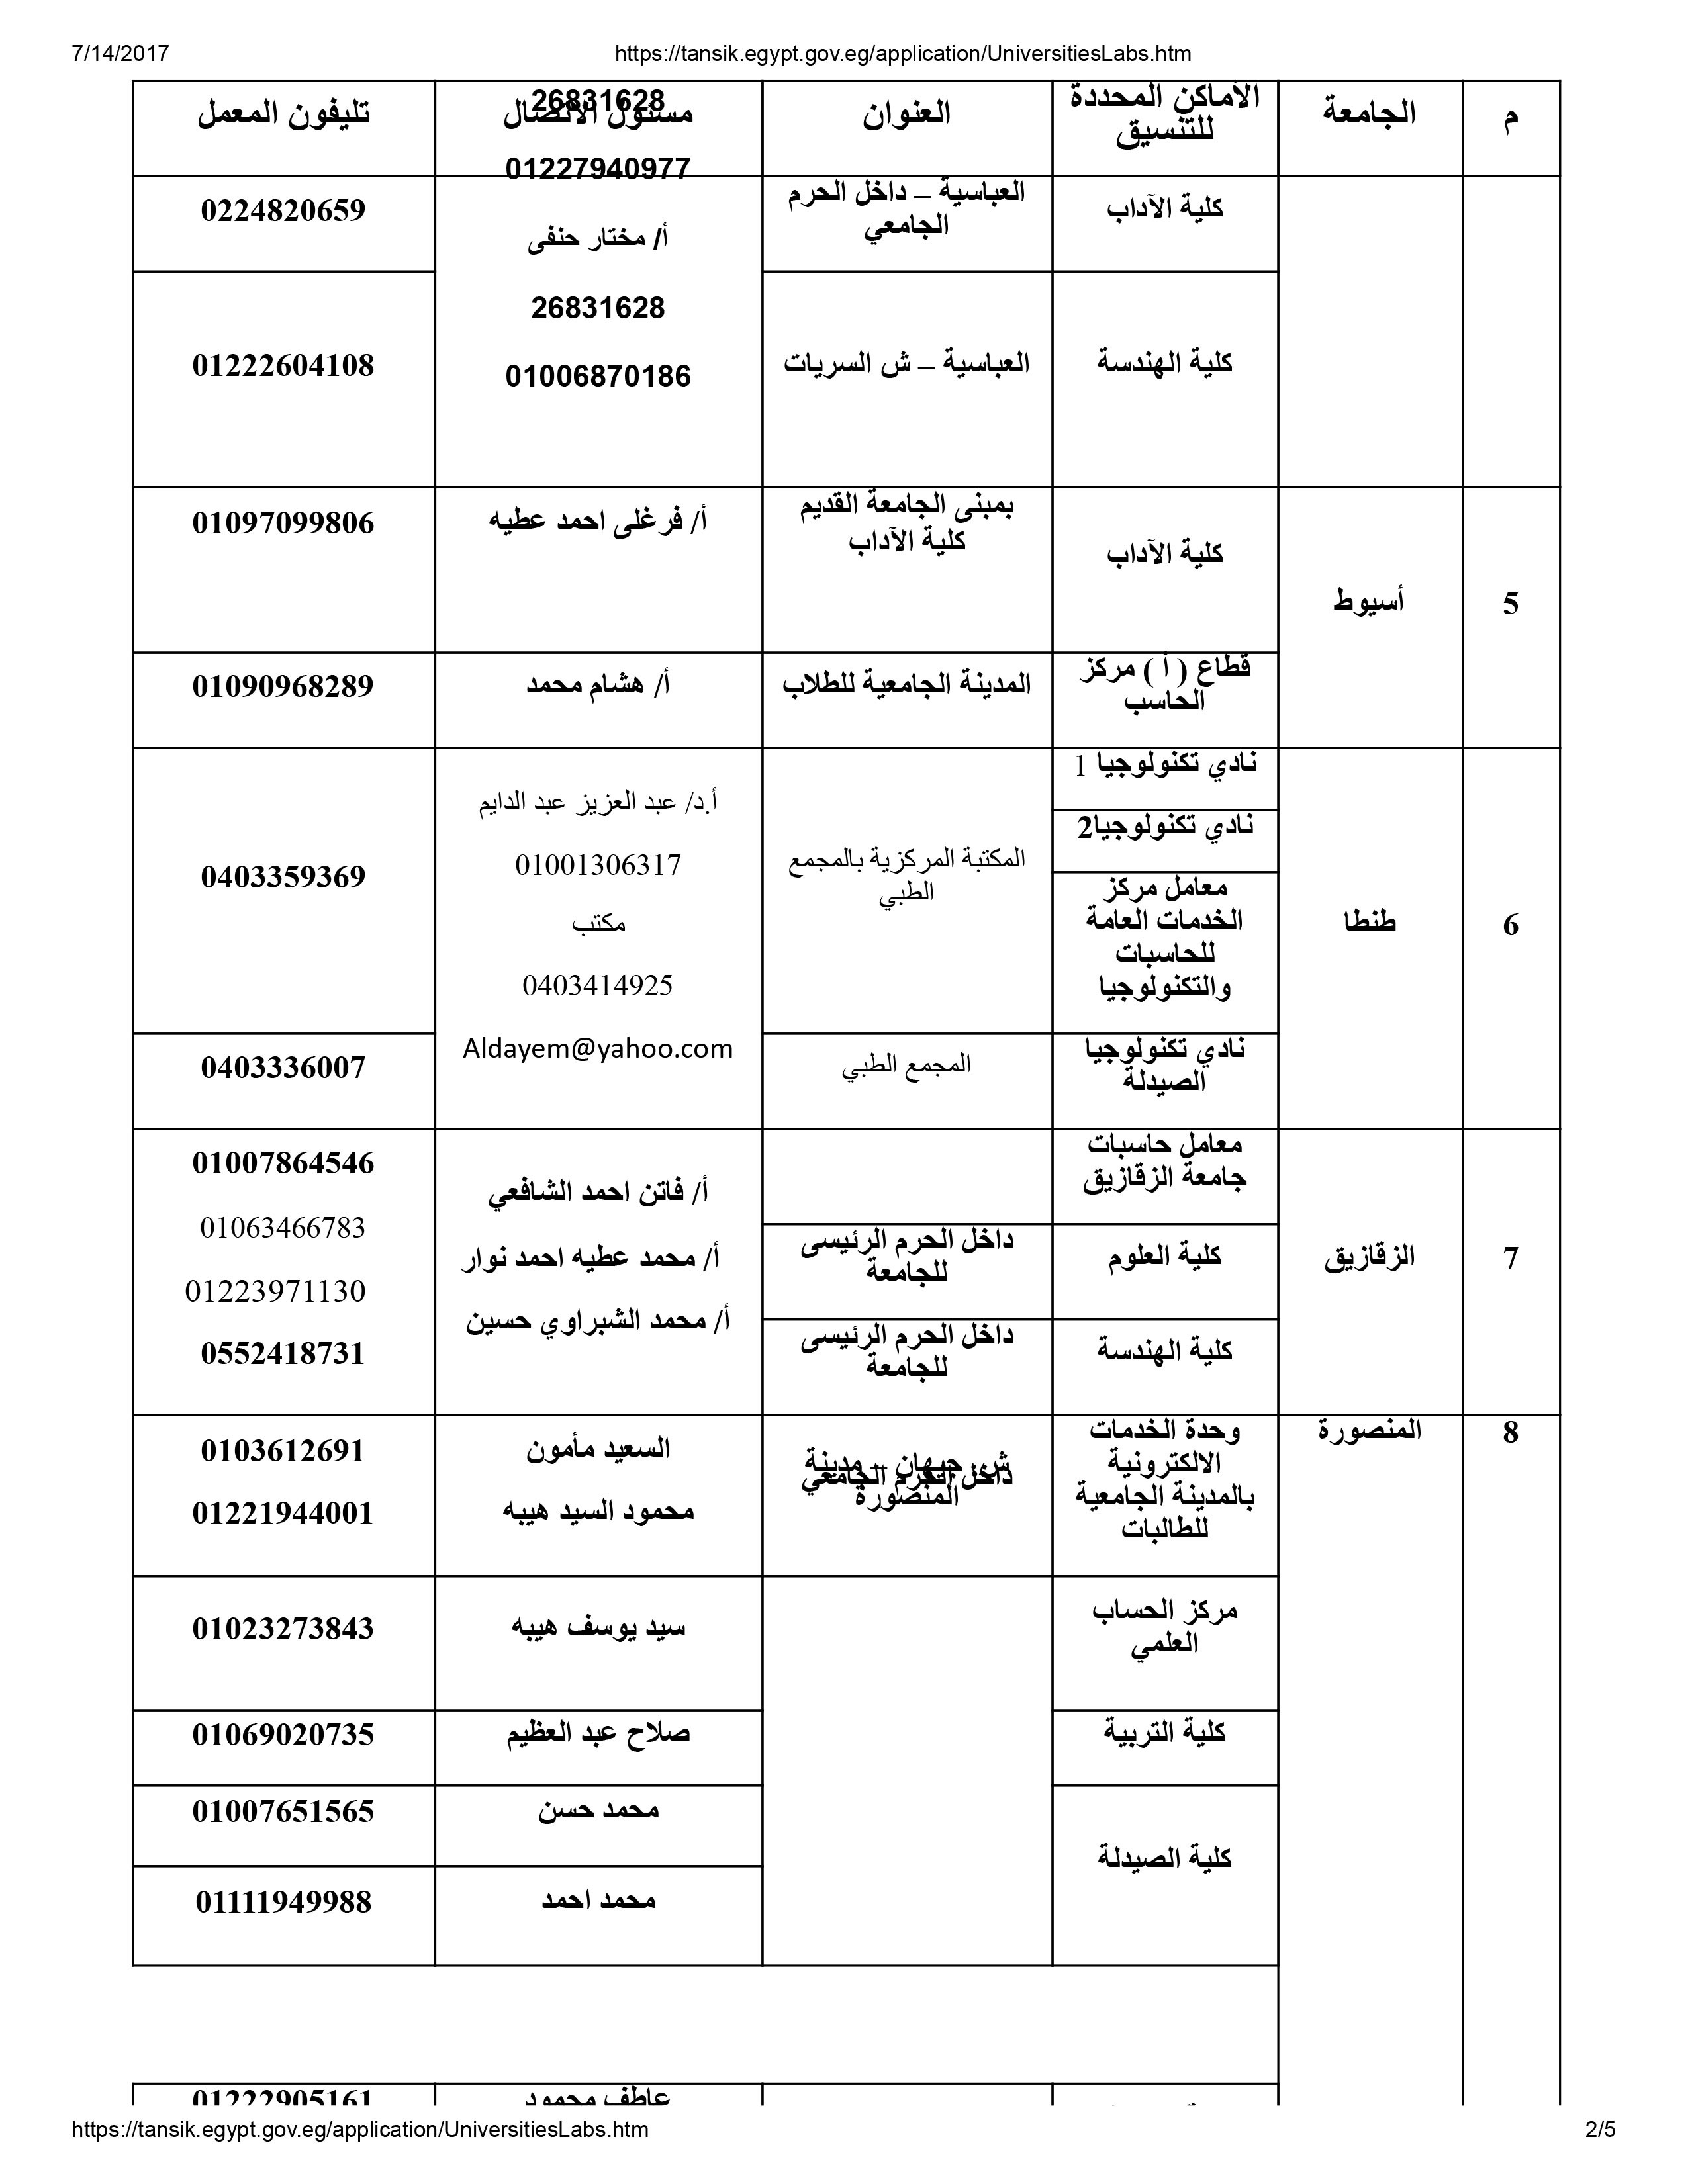 مسئولى مكاتب التنسيق بالجامعات المصرية (2)